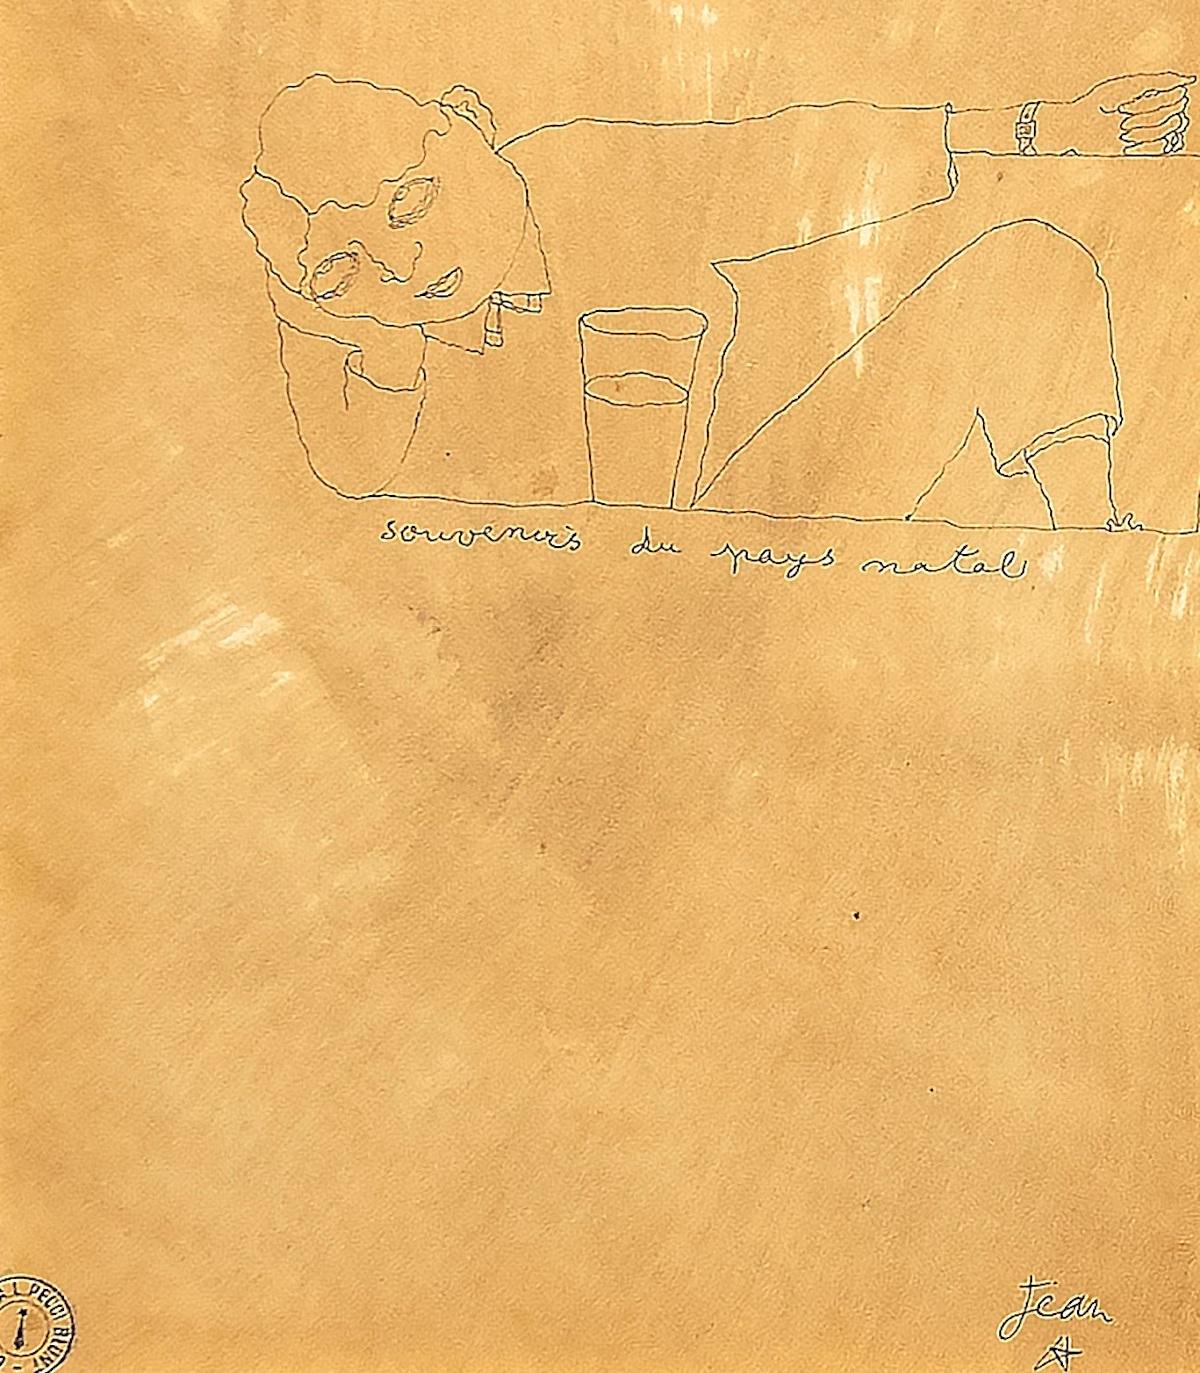 Souvenirs du Pays Natal ist ein Originalkunstwerk des großen surrealistischen Künstlers Jean Cocteau aus dem Jahr 1922.

China-Tinte auf Karton.

In der Mitte der Komposition betitelt "Souvenirs du Pays Natal" und vom Künstler rechts unten mit